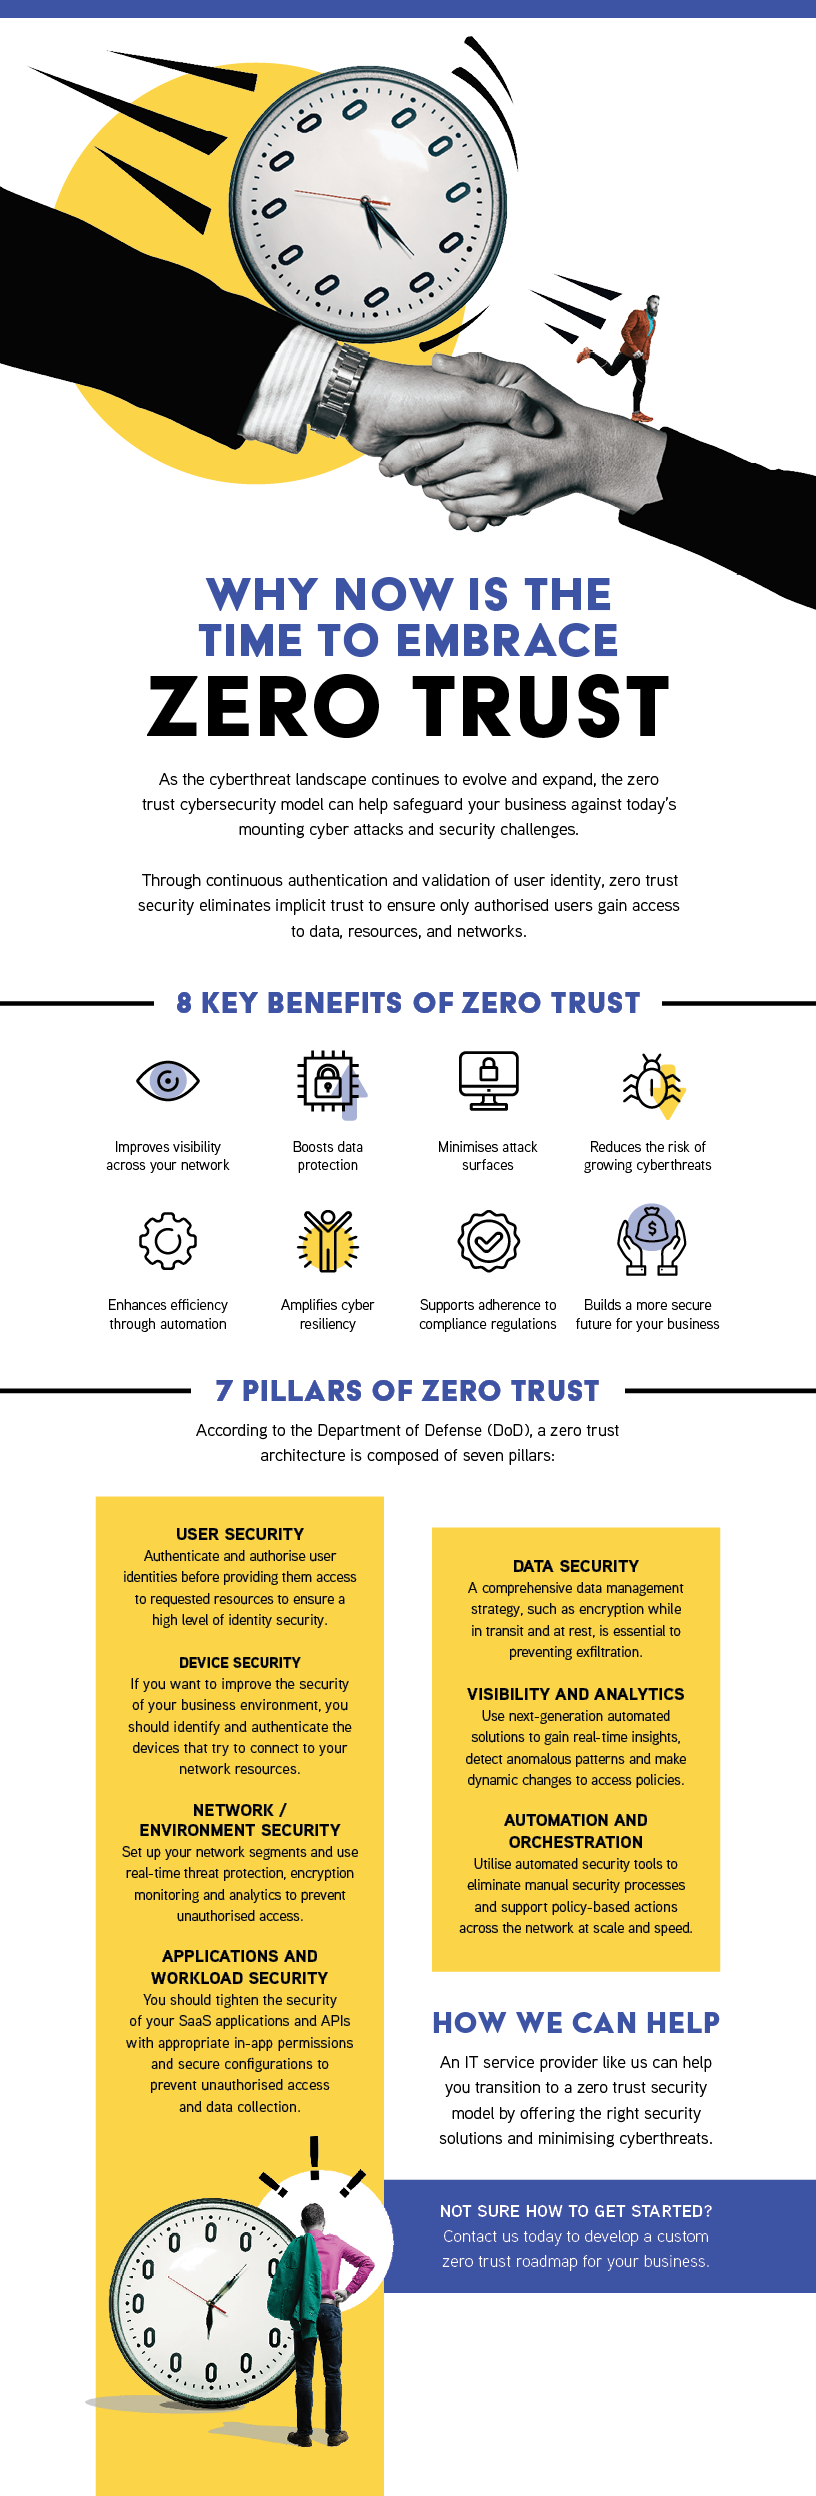 zero trust explained infographic